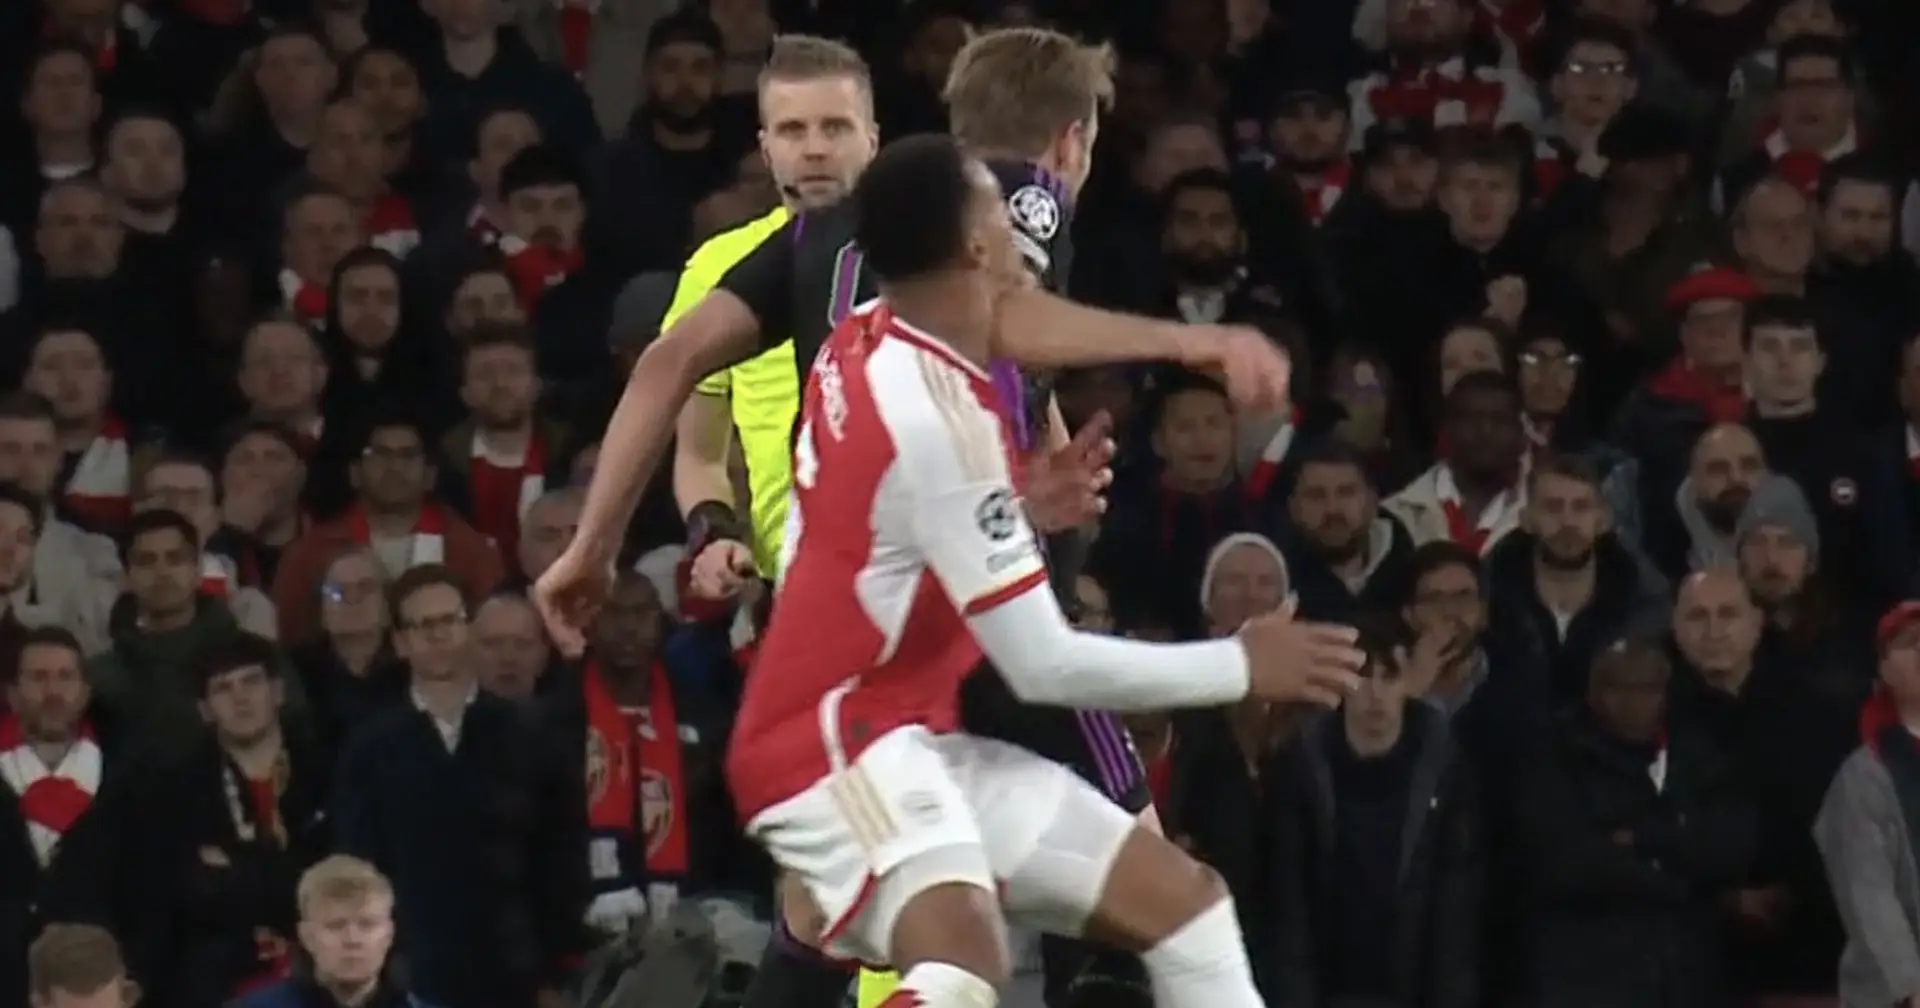 Frustration pur bei Arsenal-Fans: Die Gunners fordern Rote Karte für zufälligen Ellbogenschlag von Kane